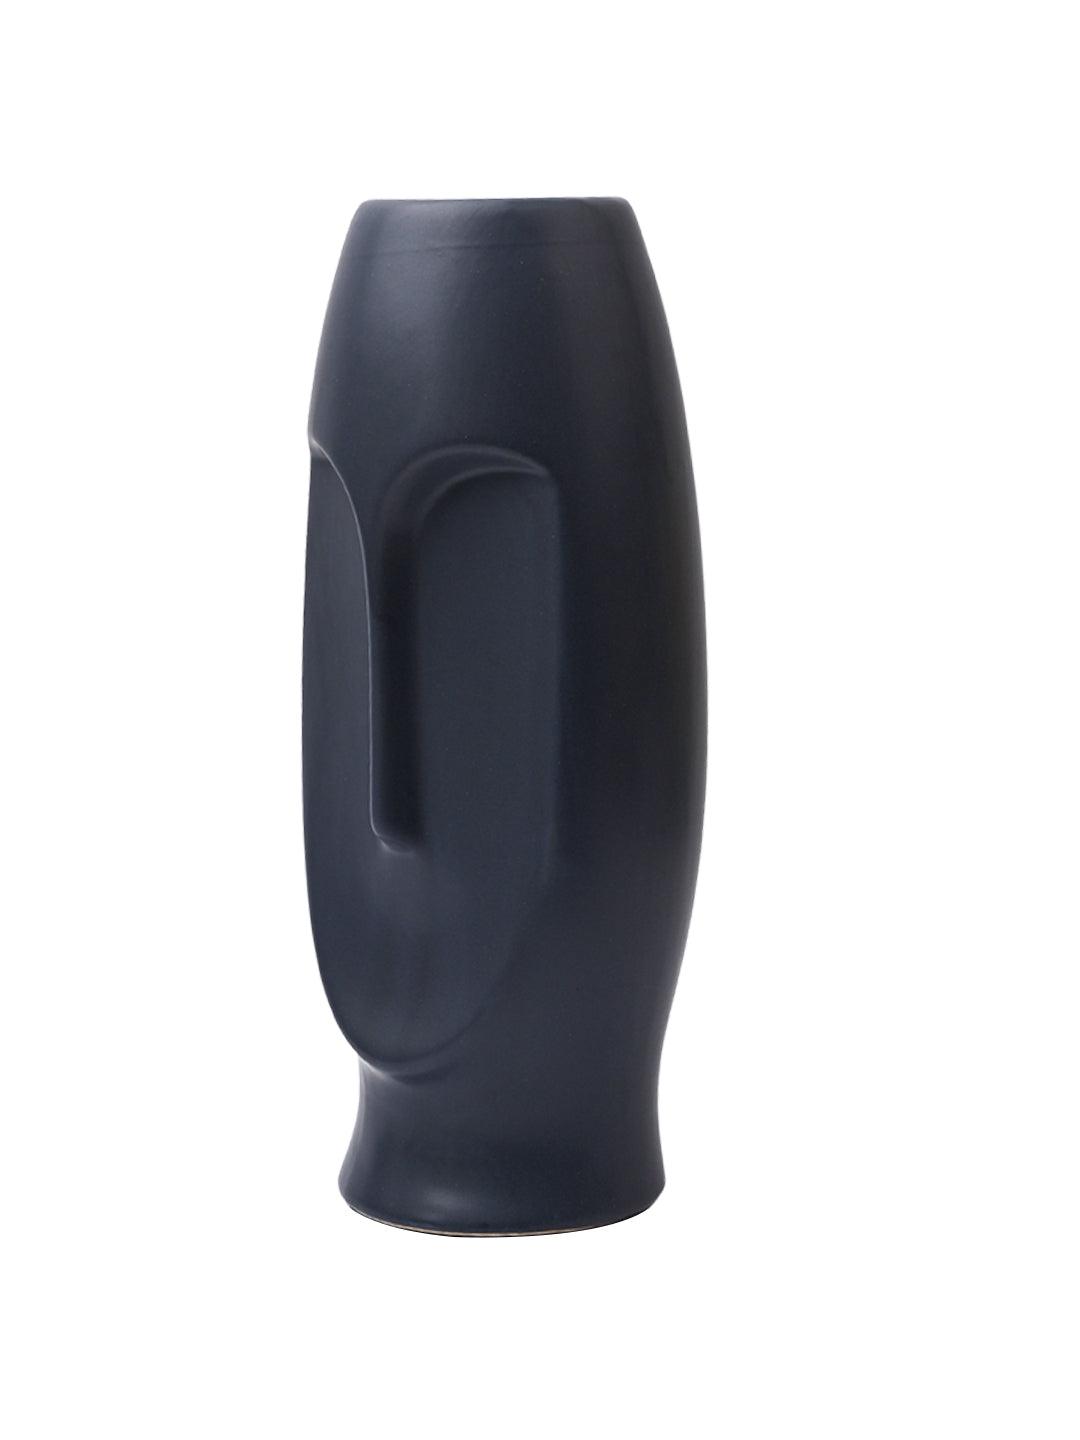 Stylish Black Face Shape Vase